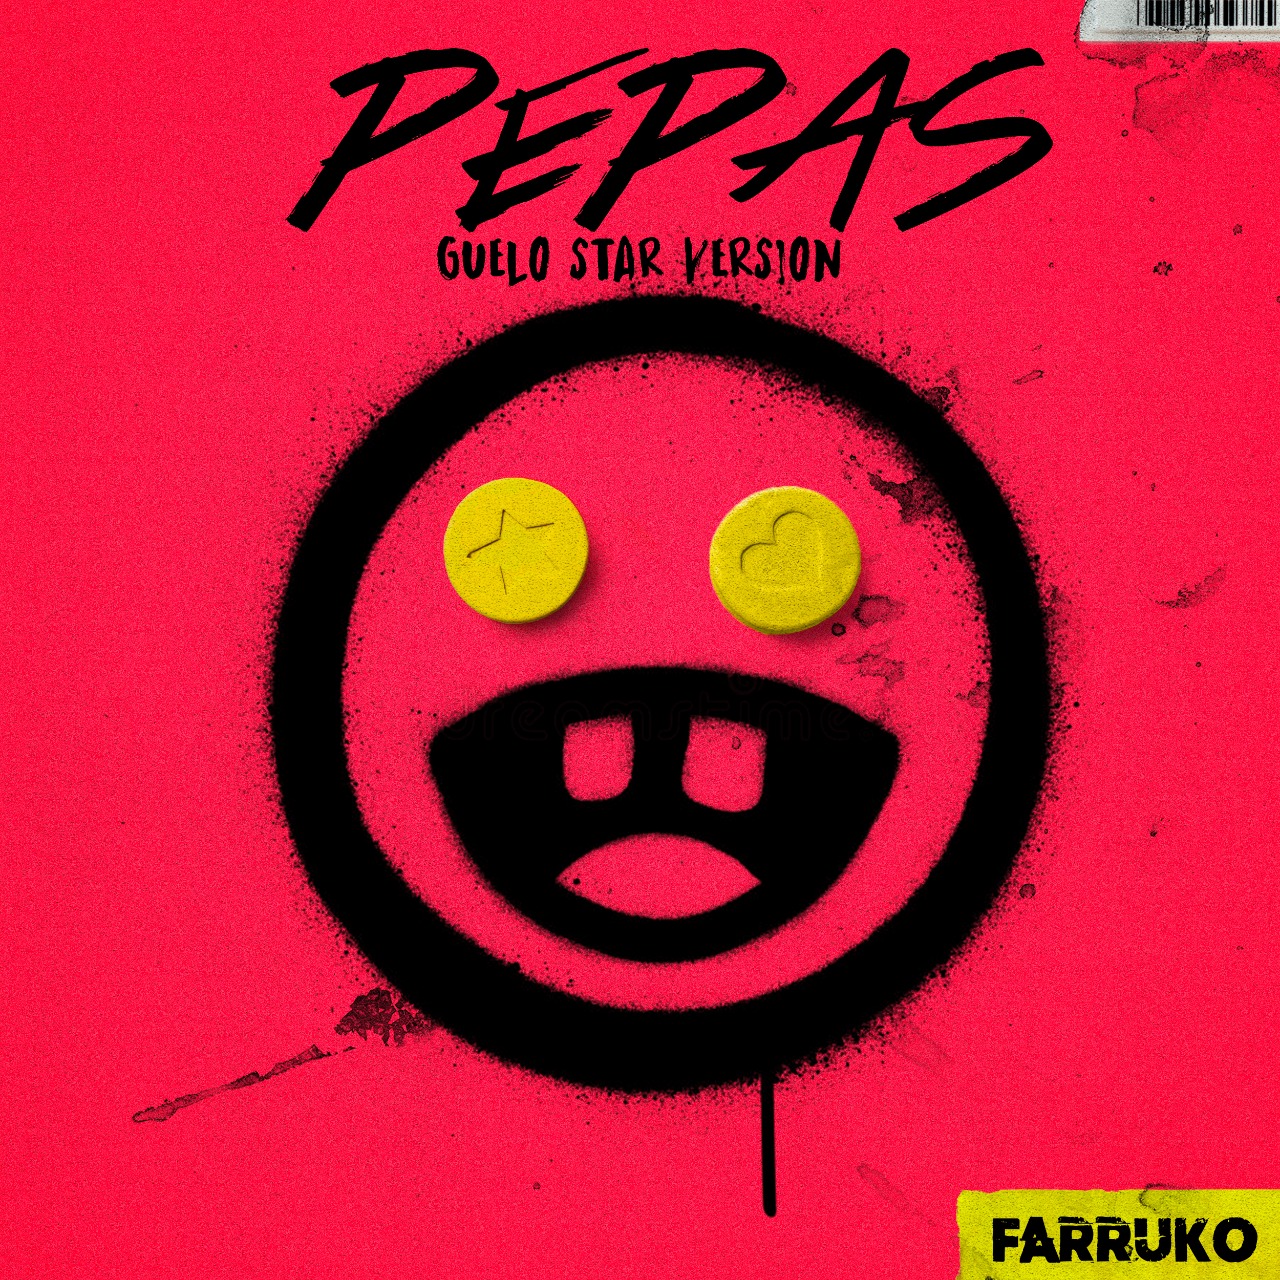 Farruko Ft. Guelo Star - Pepas (Guelo Star Version).mp3